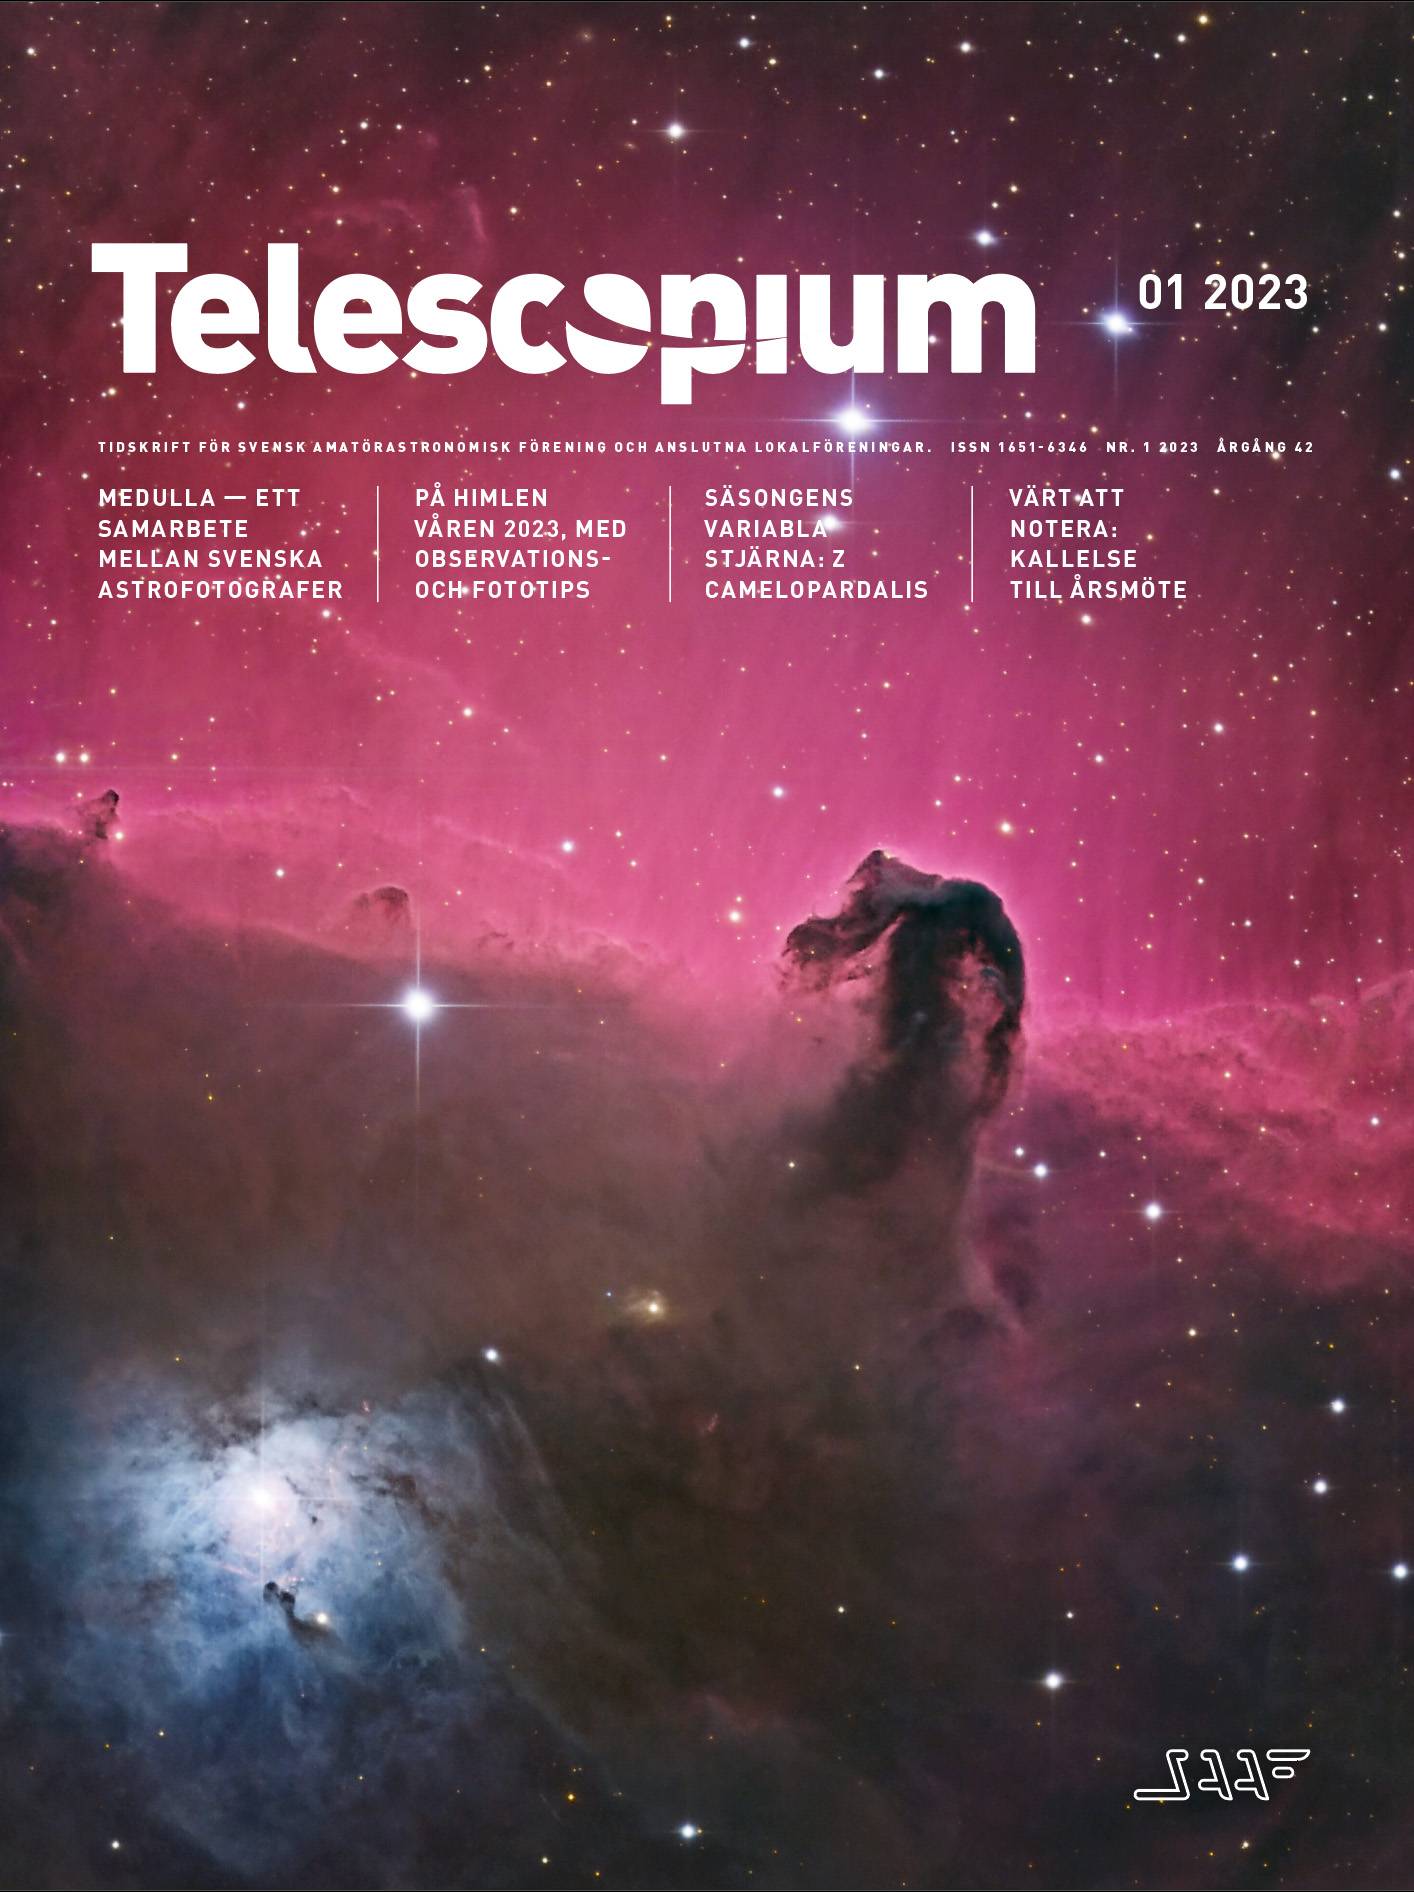 Framsidan på Telescopium nummer 1 2023, som visar hästhuvudnebulosan.